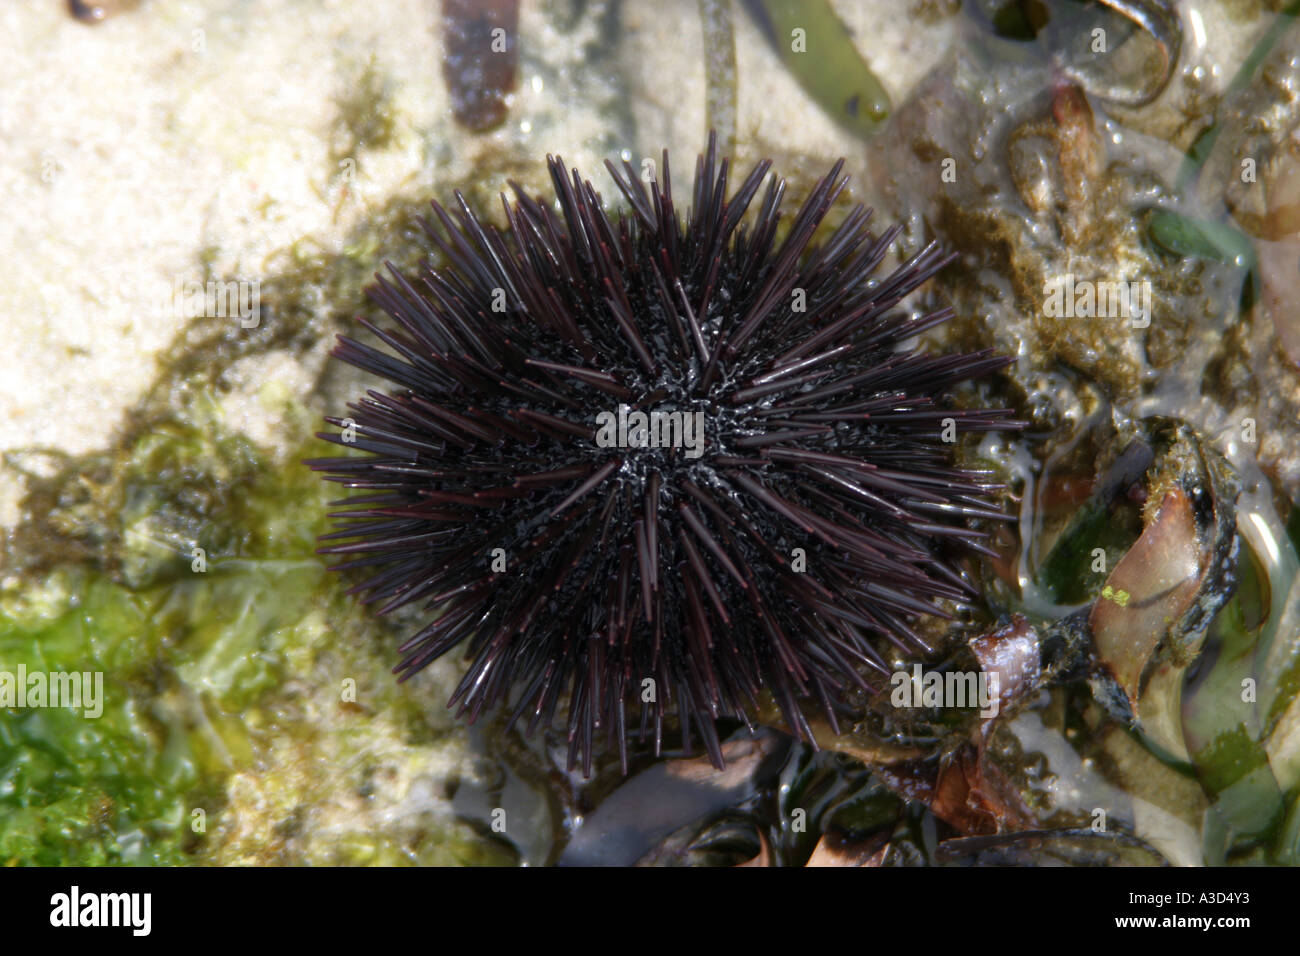 echinathrix sp echinidae echinoideasea urchin echinoid at coral reef Stock Photo